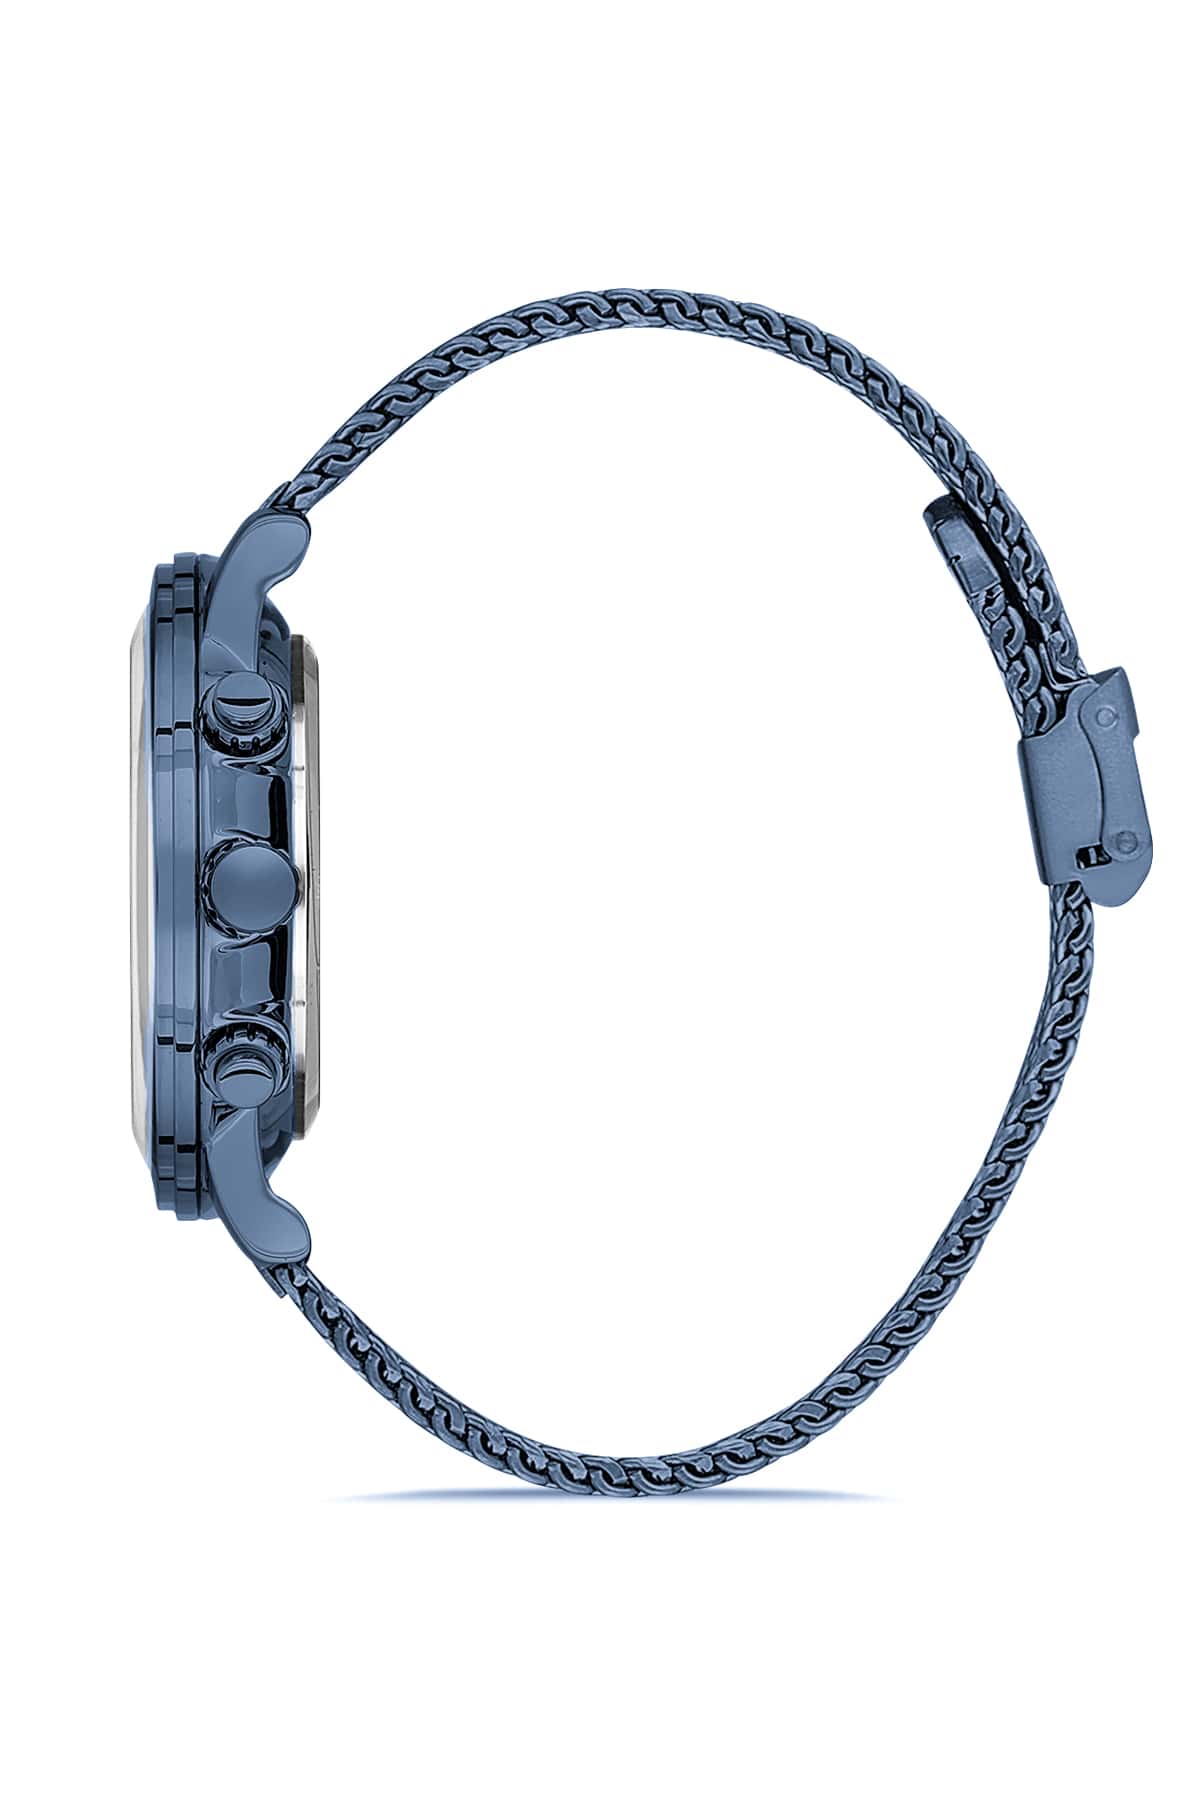 Davıd Guner Black Dial Men's Wristwatch with Steel Knitted Strap